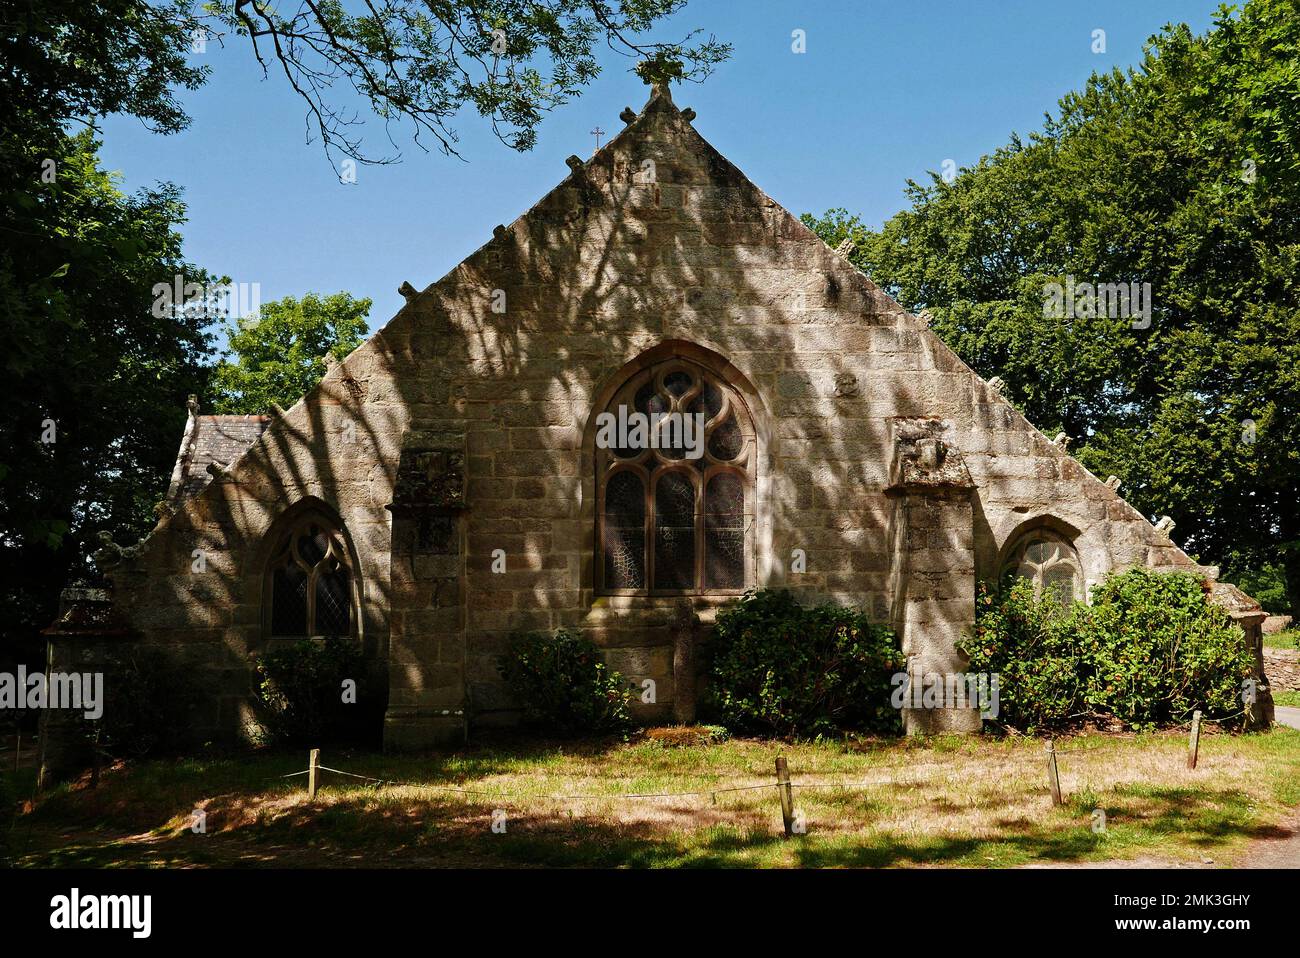 Chapelle de Notre-Dame de Tremalo, Christ jaune de Gaugin, Pont-Aven, Finistere, Bretagne, Brittany, France, Europe Stock Photo